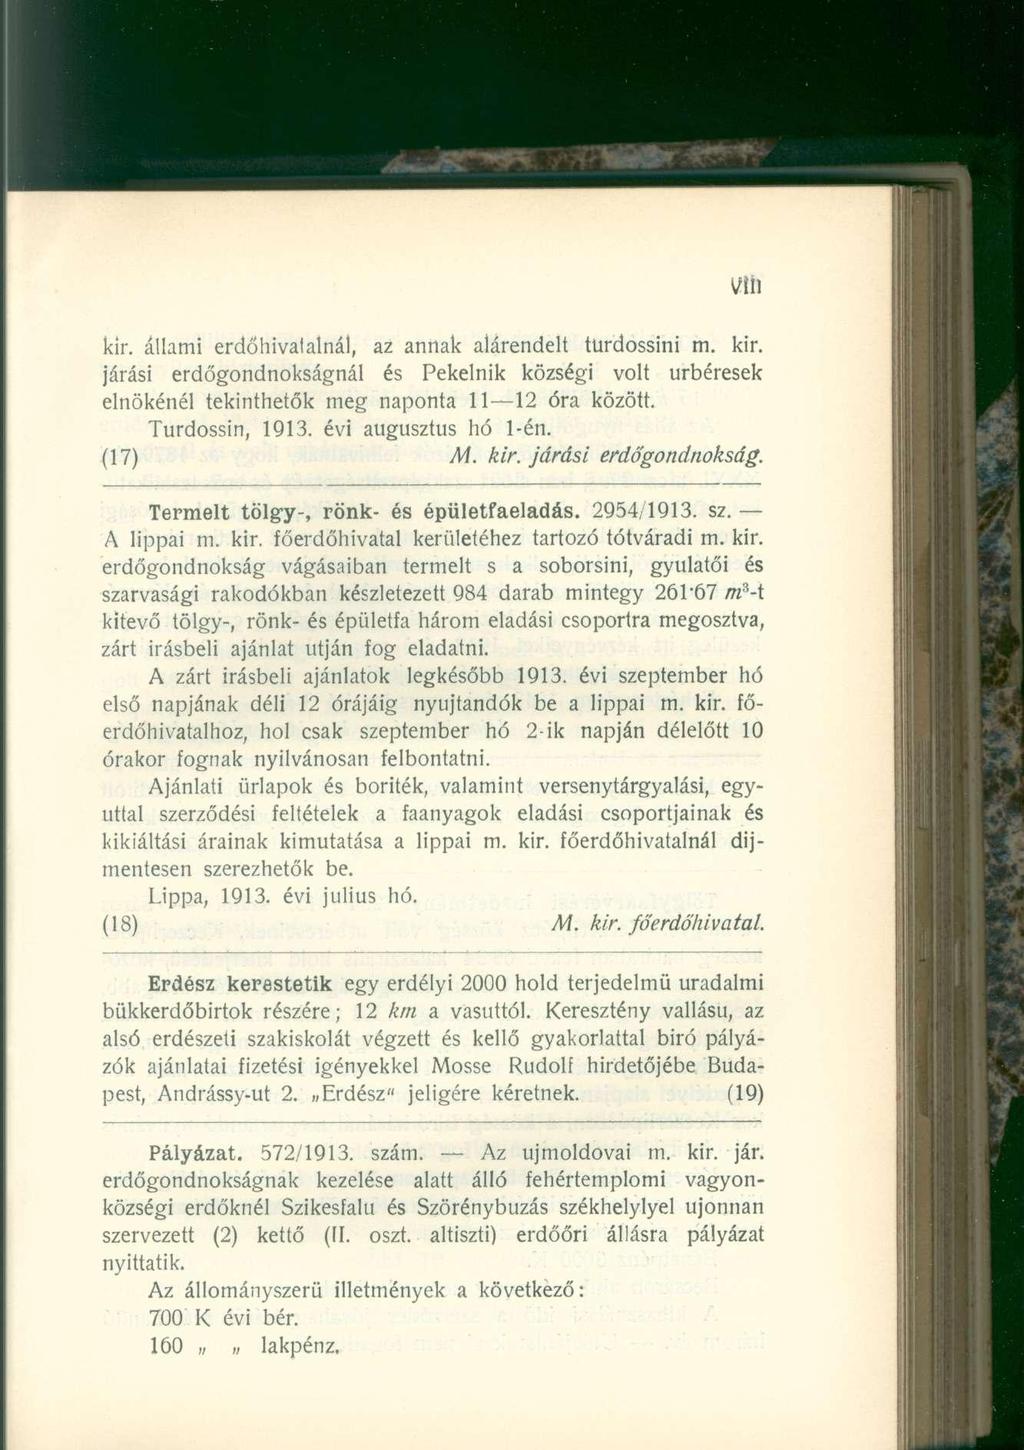 vlíl kir. állami erdőhivatalnál, az annak alárendelt türdossini m. kir. járási erdőgondnokságnál és Pekelnik községi volt úrbéresek elnökénél tekinthetők meg naponta 11 12 óra között. Turdossin, 1913.